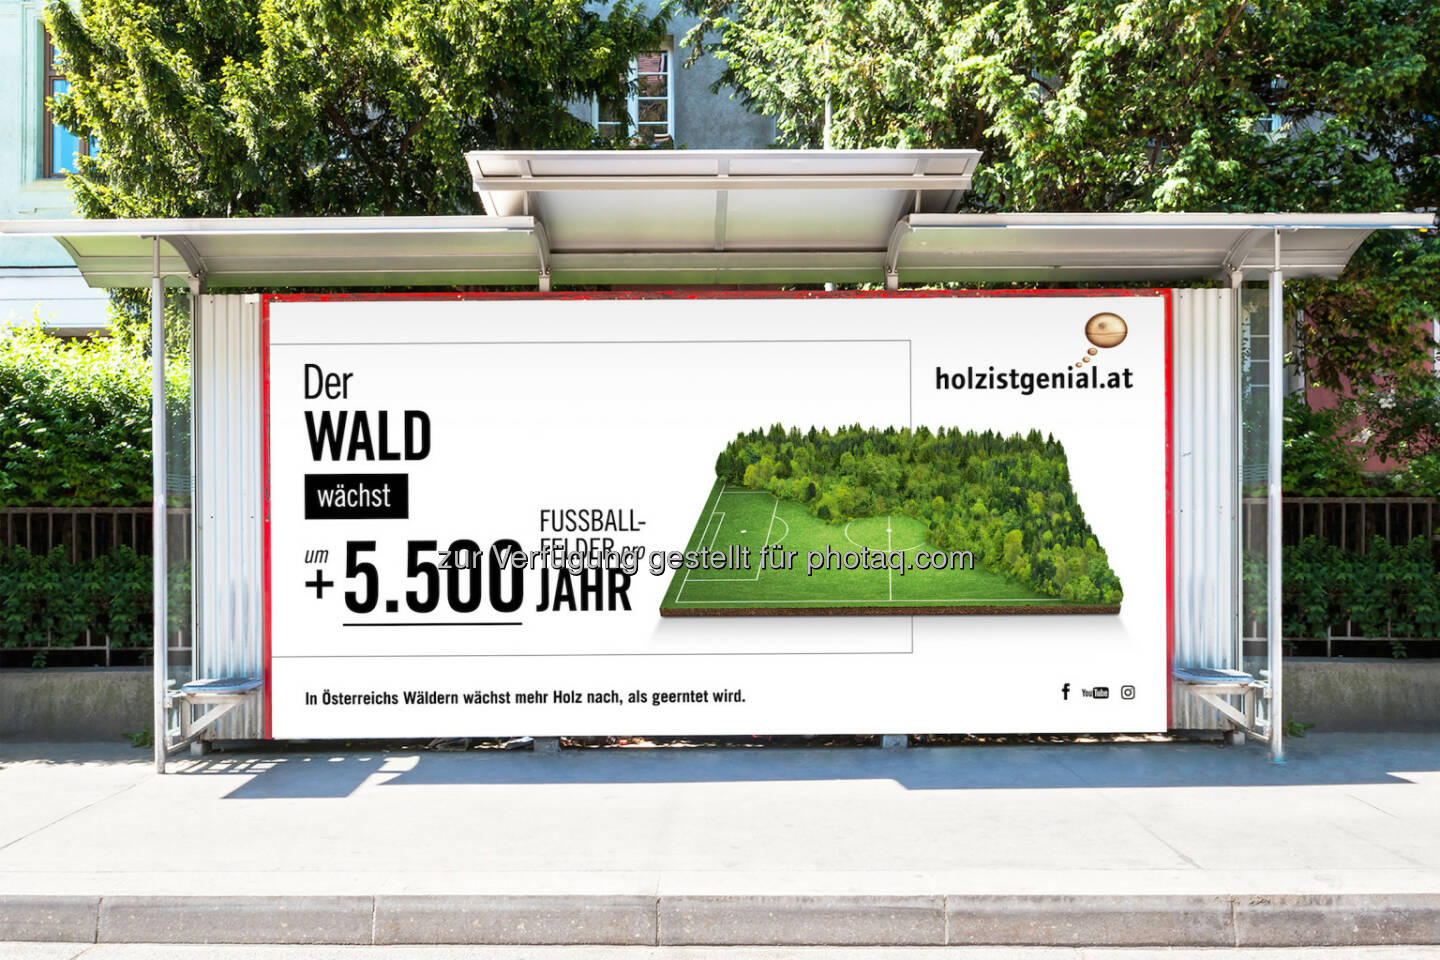 proHolz Austria - Arbeitsgemeinschaft der österreichischen Holzwirtschaft: Holz ist genial - proHolz Austria mit neuer Kampagne on air. (Fotocredit: proHolz Austria)